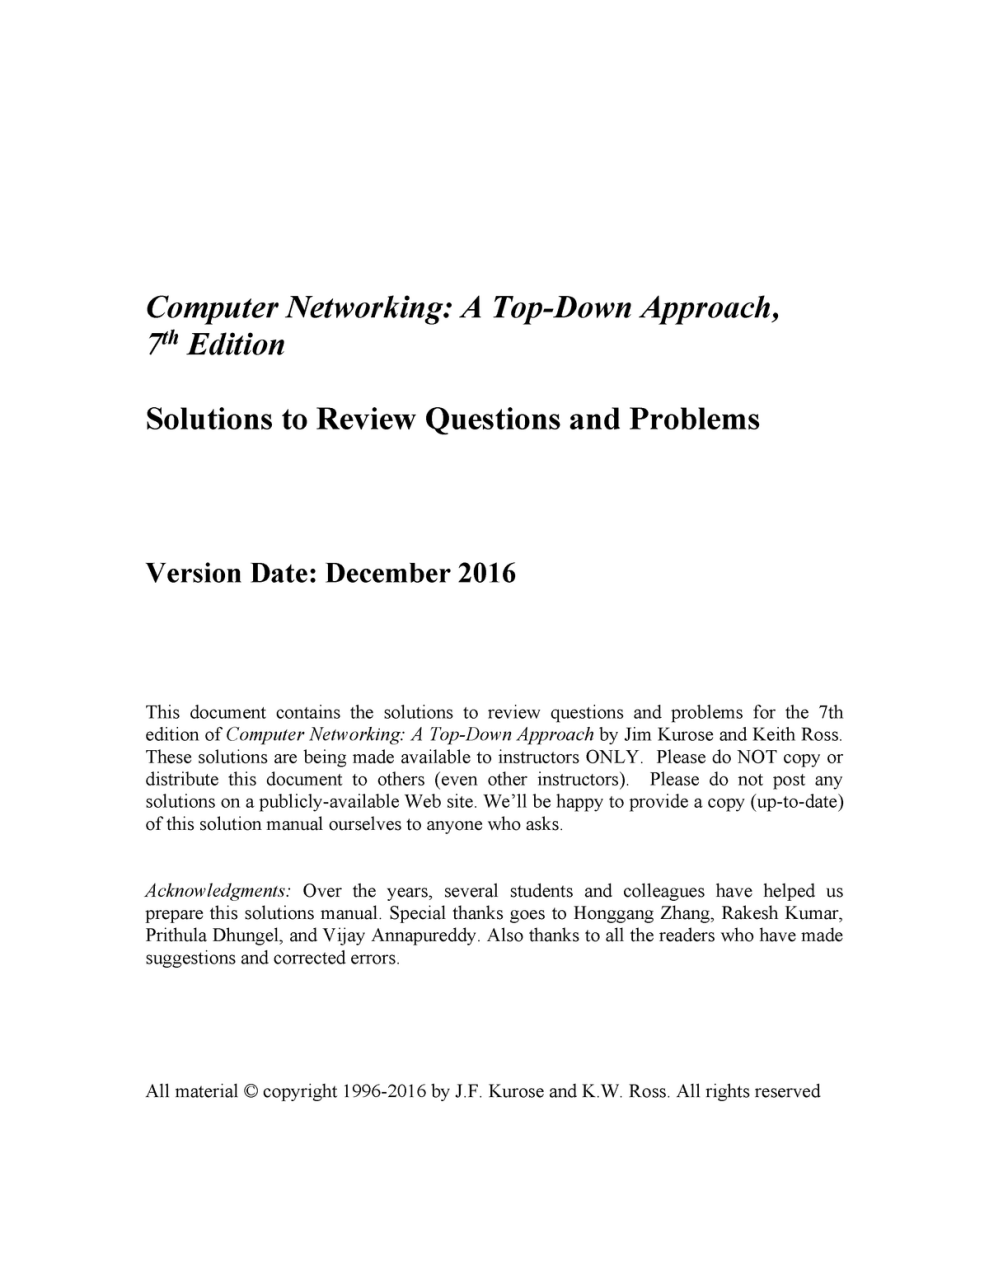 컴퓨터네트워킹 하향식 접근 7판 솔루션 - Computer Networking: A Top-Down Approach, 7 Th  Edition Solutions To Review - Studocu